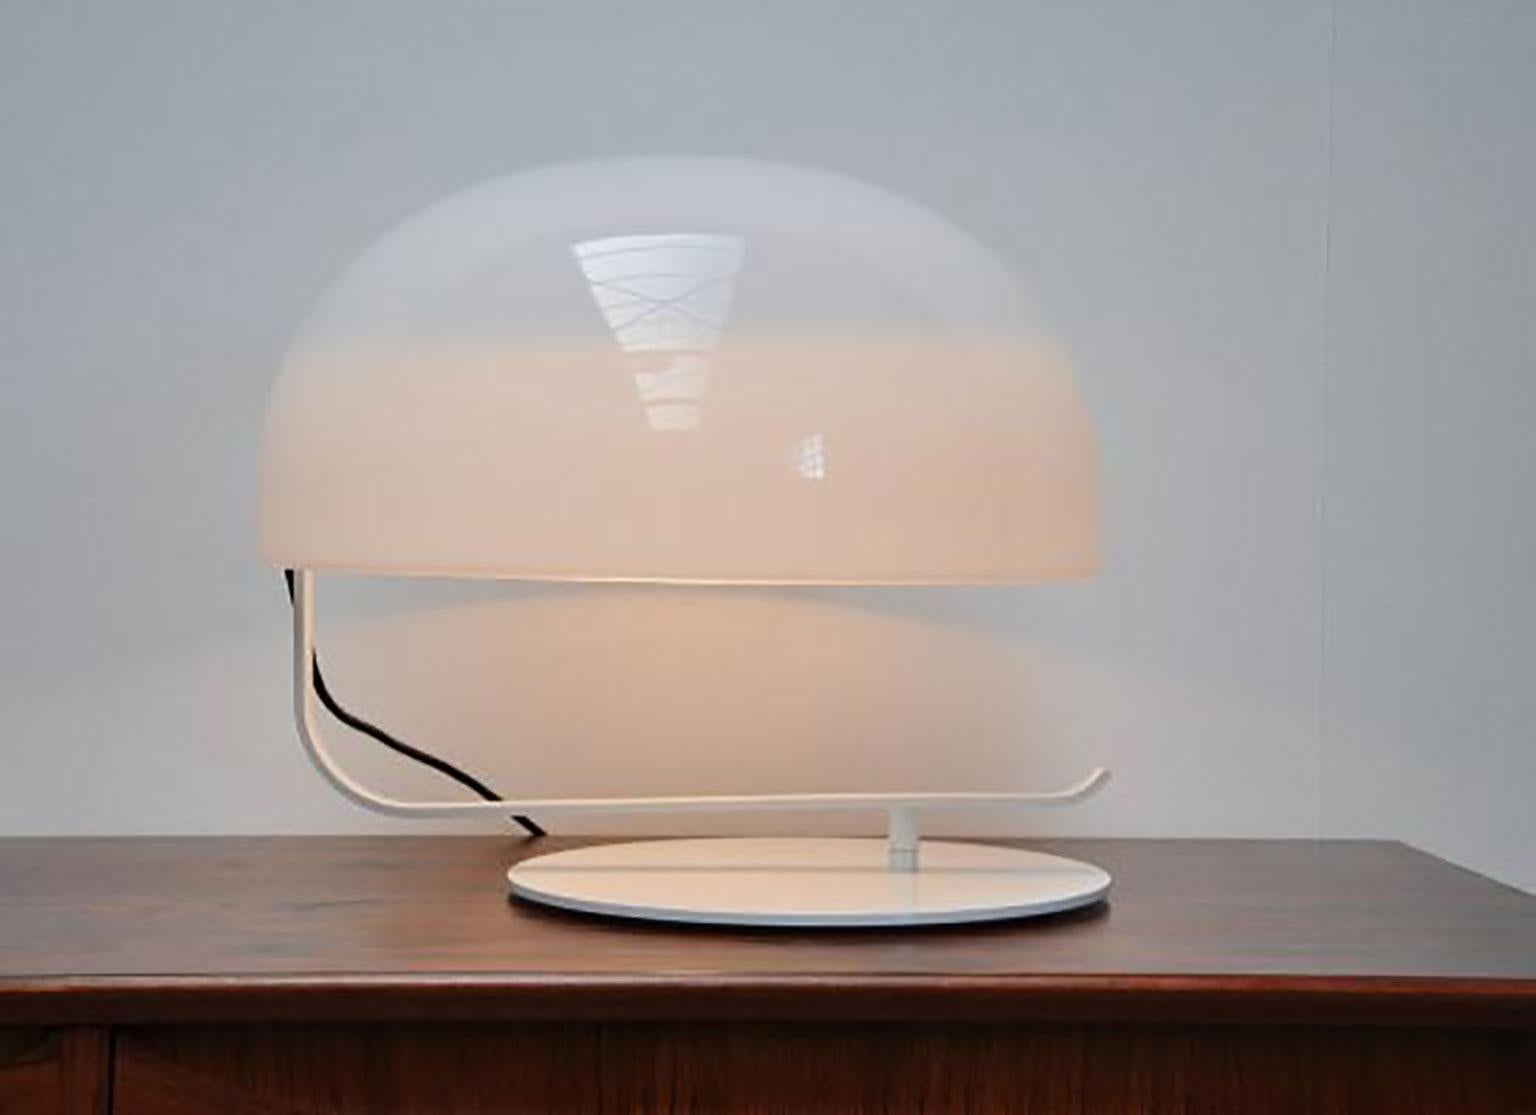 La lampe de table Zanuso a été conçue par Marco Zanuso Soto pour Oluce. Classique, cette lampe, née en 1963 sous le nom de Modèle 275, se distingue par son grand diffuseur rotatif en Perspex réglable, fixé à une base en métal laqué. Même si elle a